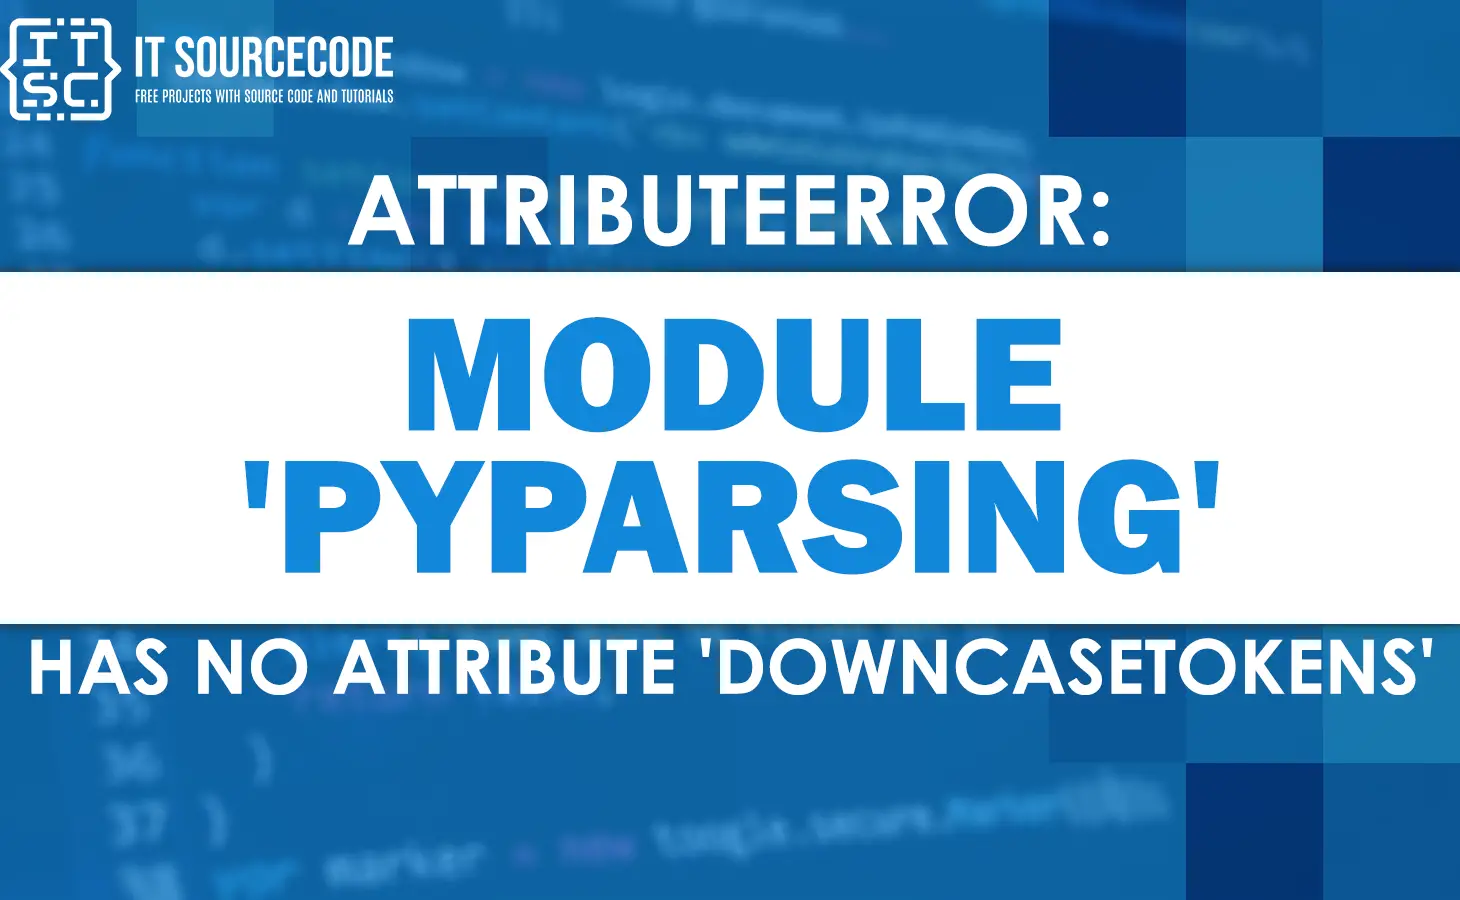 Attributeerror module 'pyparsing' has no attribute 'downcasetokens'